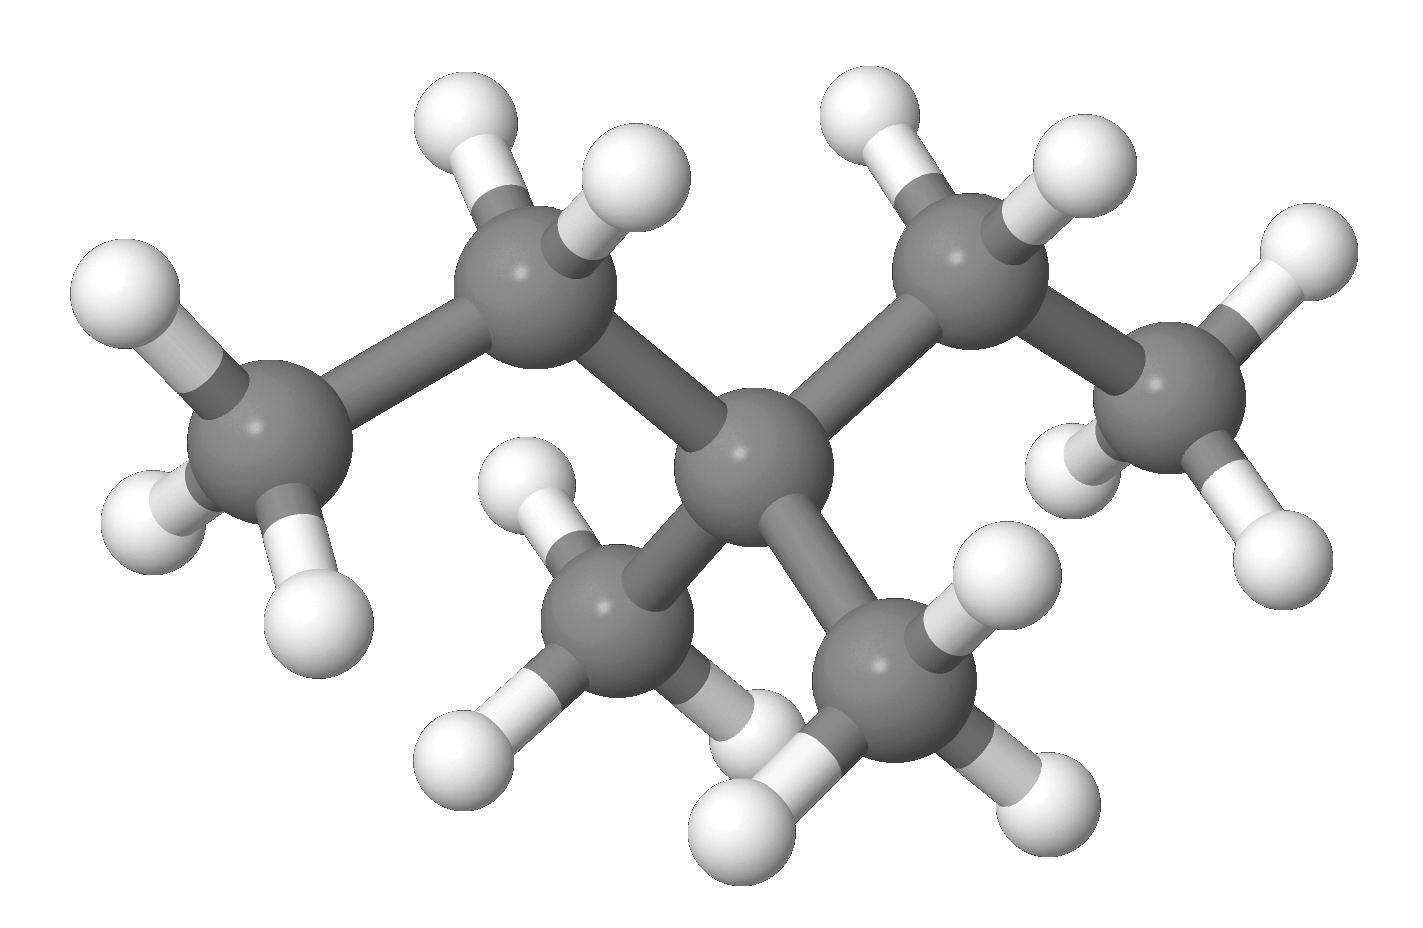 3 3 Диметилпентан. C₂h₆o, h₃с-о-сн₃ модель молекулы. 3,3-Diethylpentane. Число концевых групп в молекуле 3,3 диметилпентан. 3 3 диметилпентан алкан